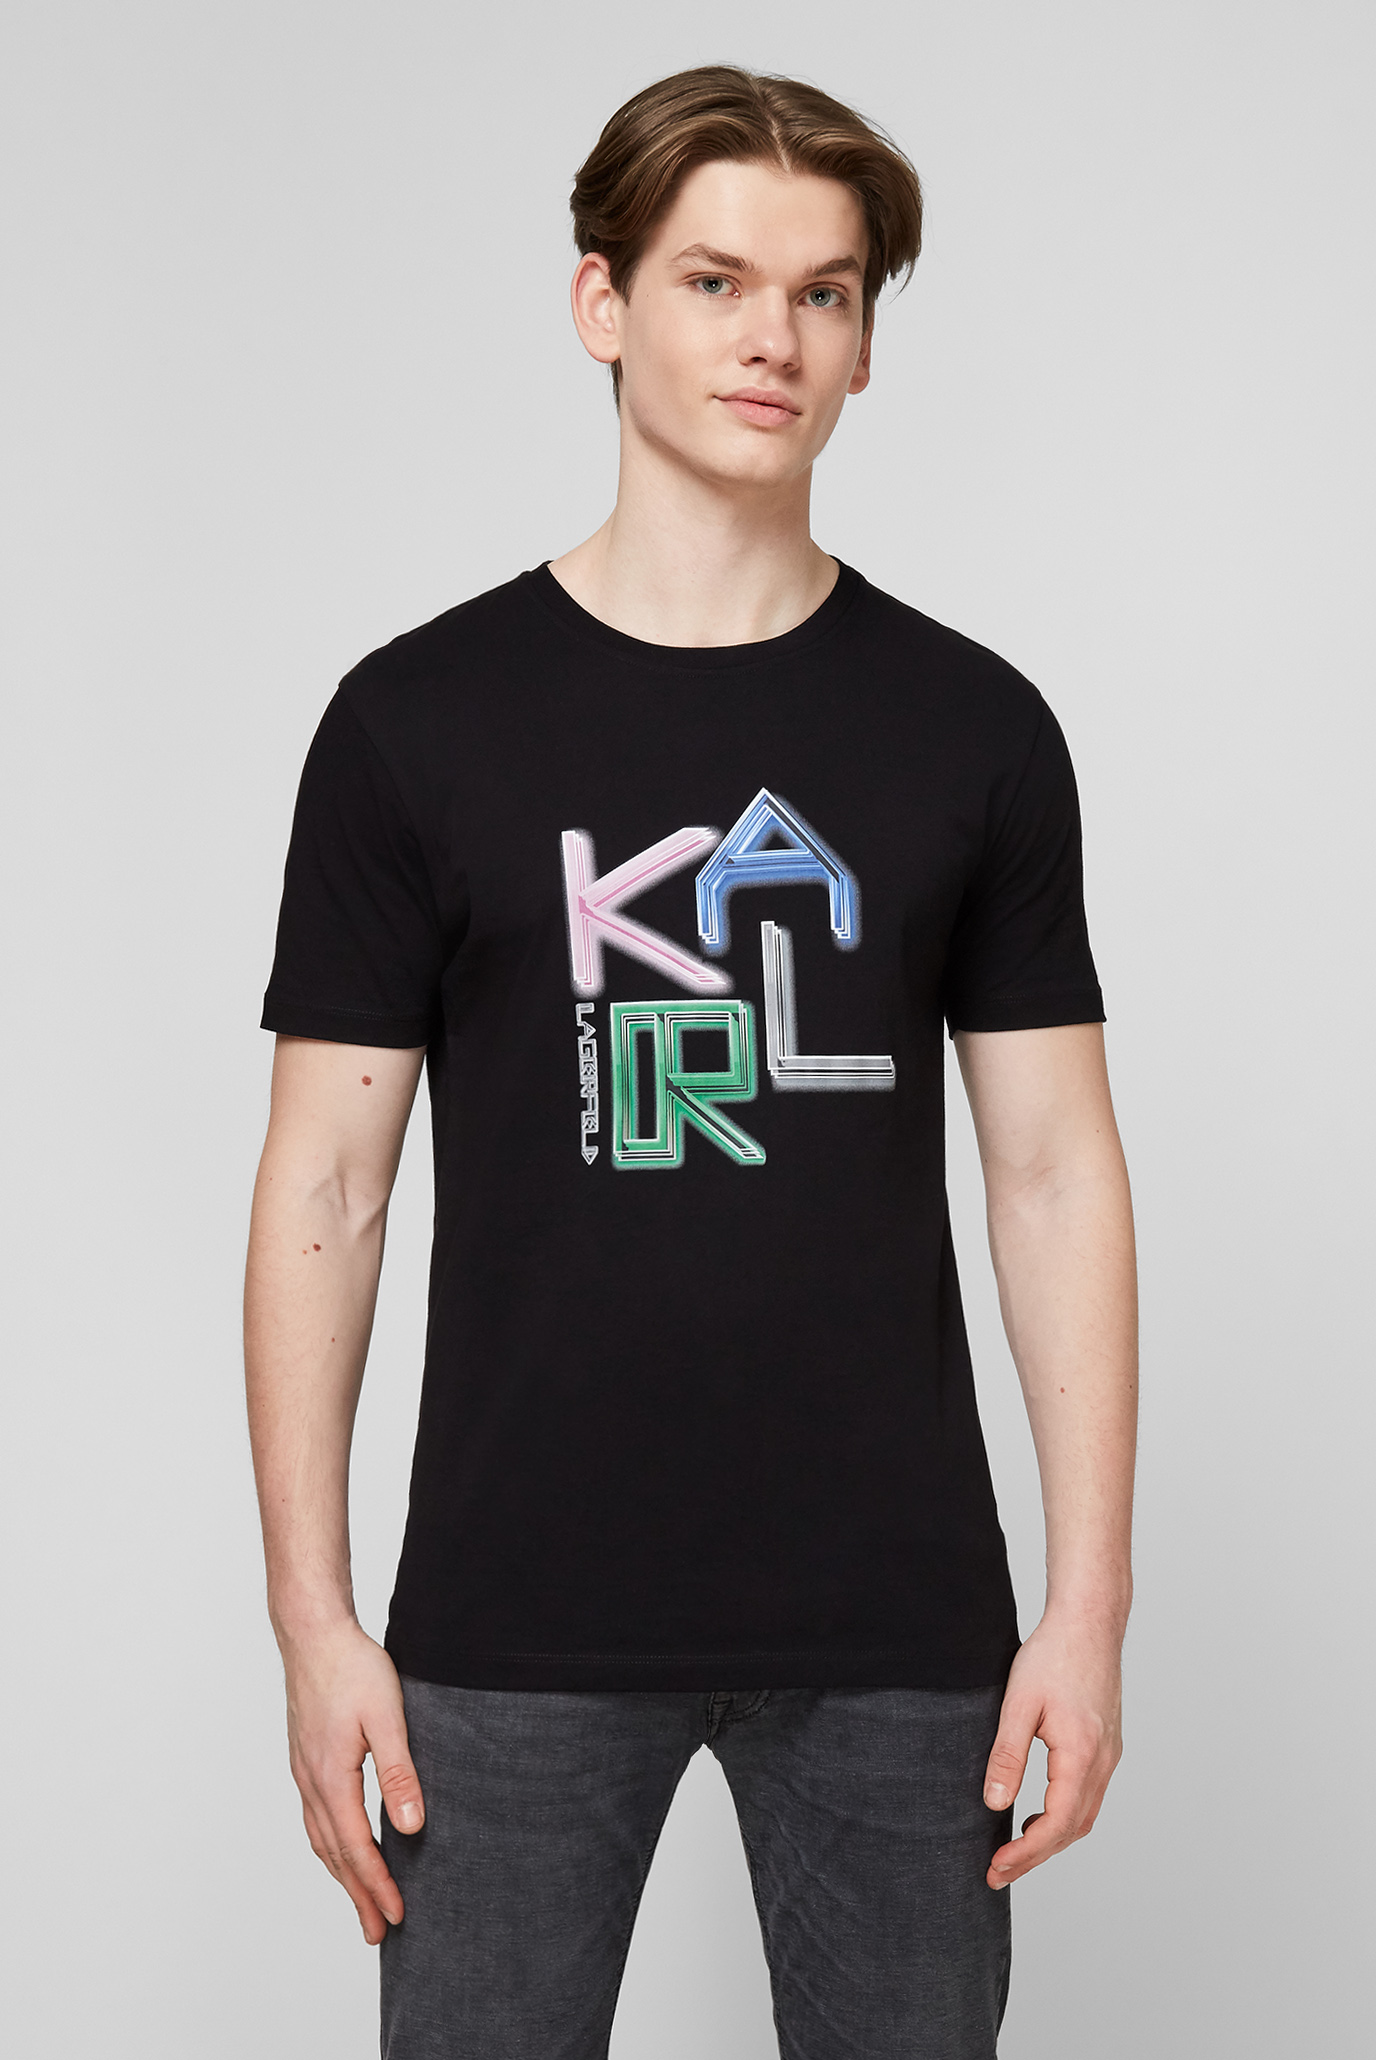 Чорна футболка для хлопців Karl Lagerfeld 511240.755063;990